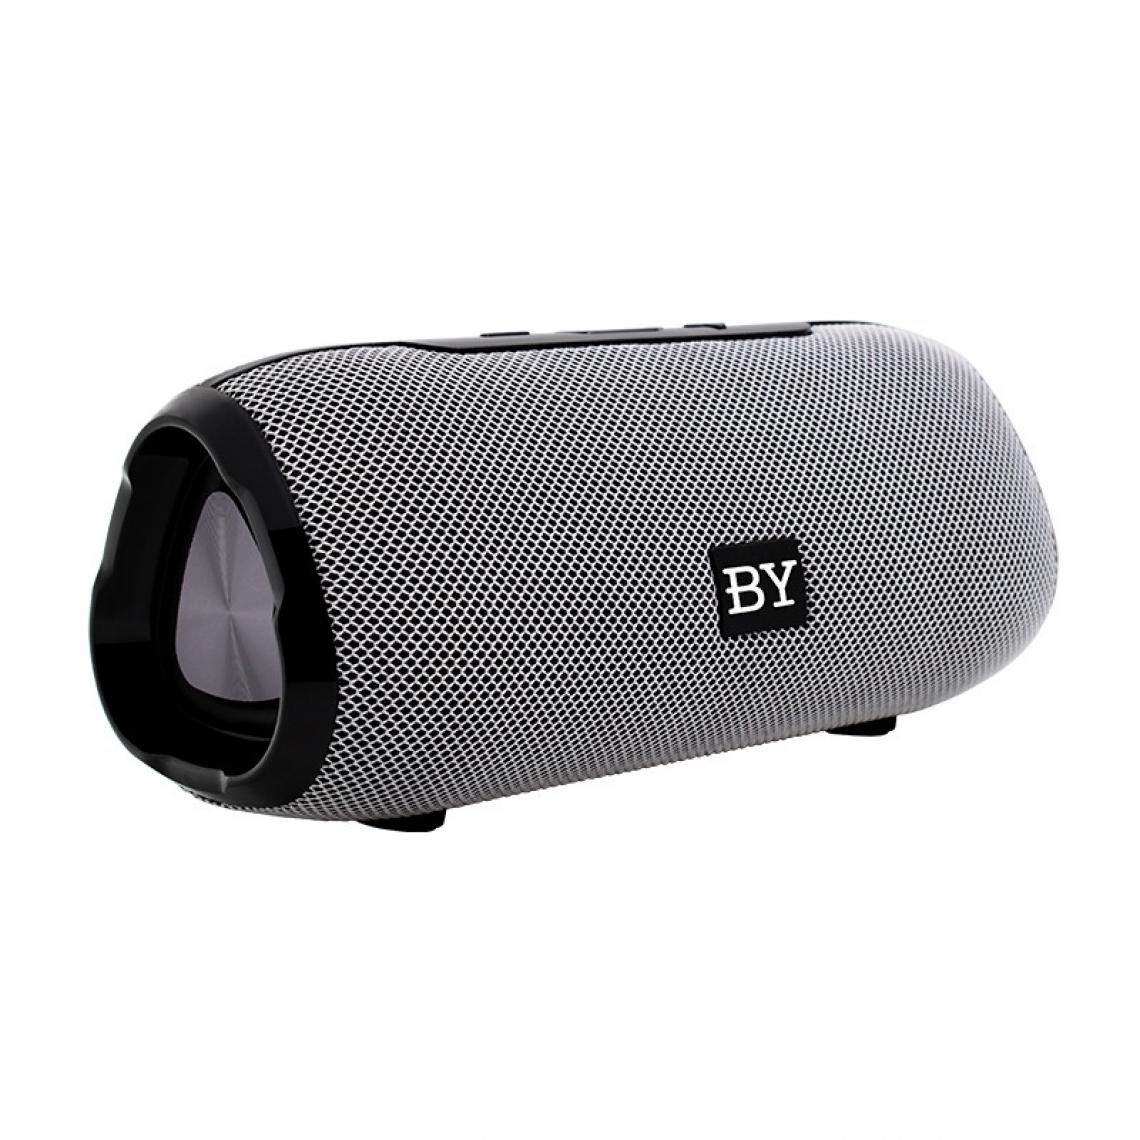 Wewoo - Enceinte Bluetooth BY Portable Haut-parleur Étanche 3D Stéréo Musique Surround Système de sonorisation extérieure Support TF AUX Gris - Enceintes Hifi